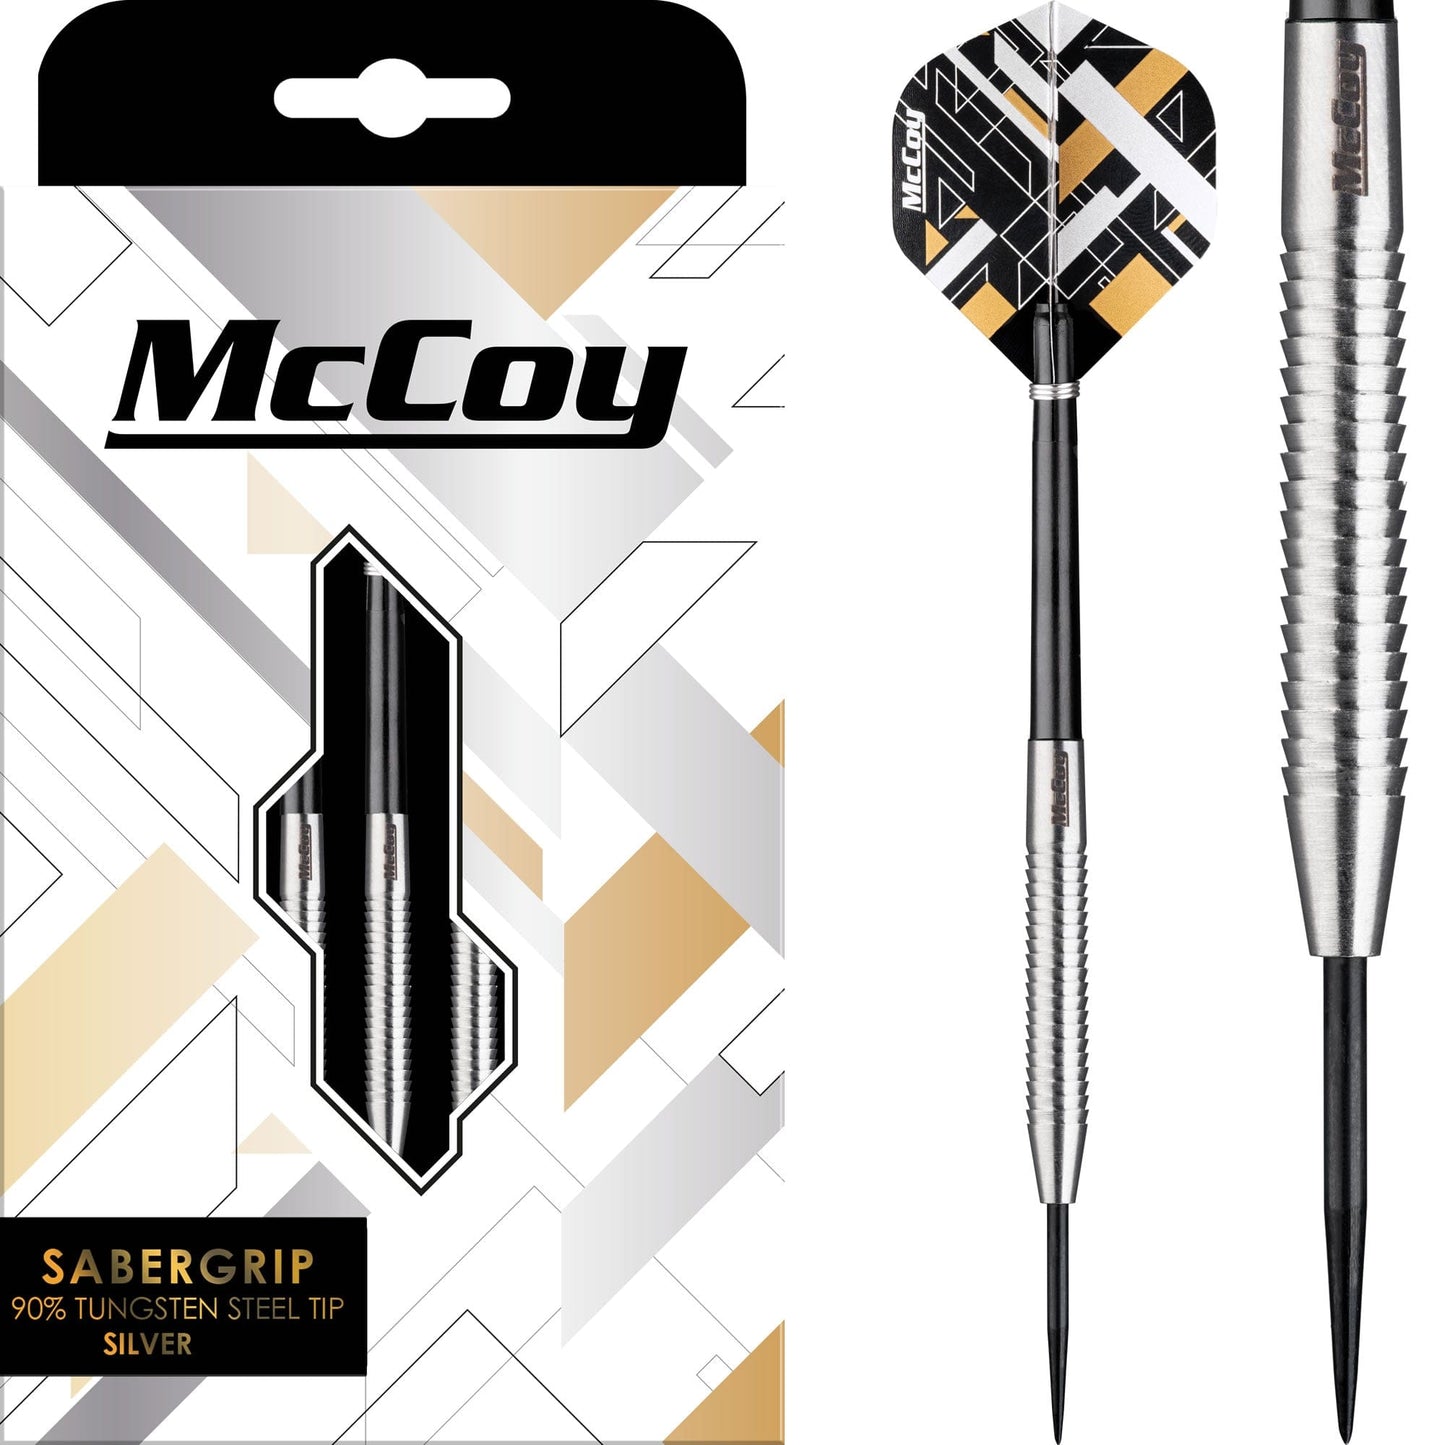 McCoy Sabergrip - 90% Steel Tip Tungsten - Silver 18g